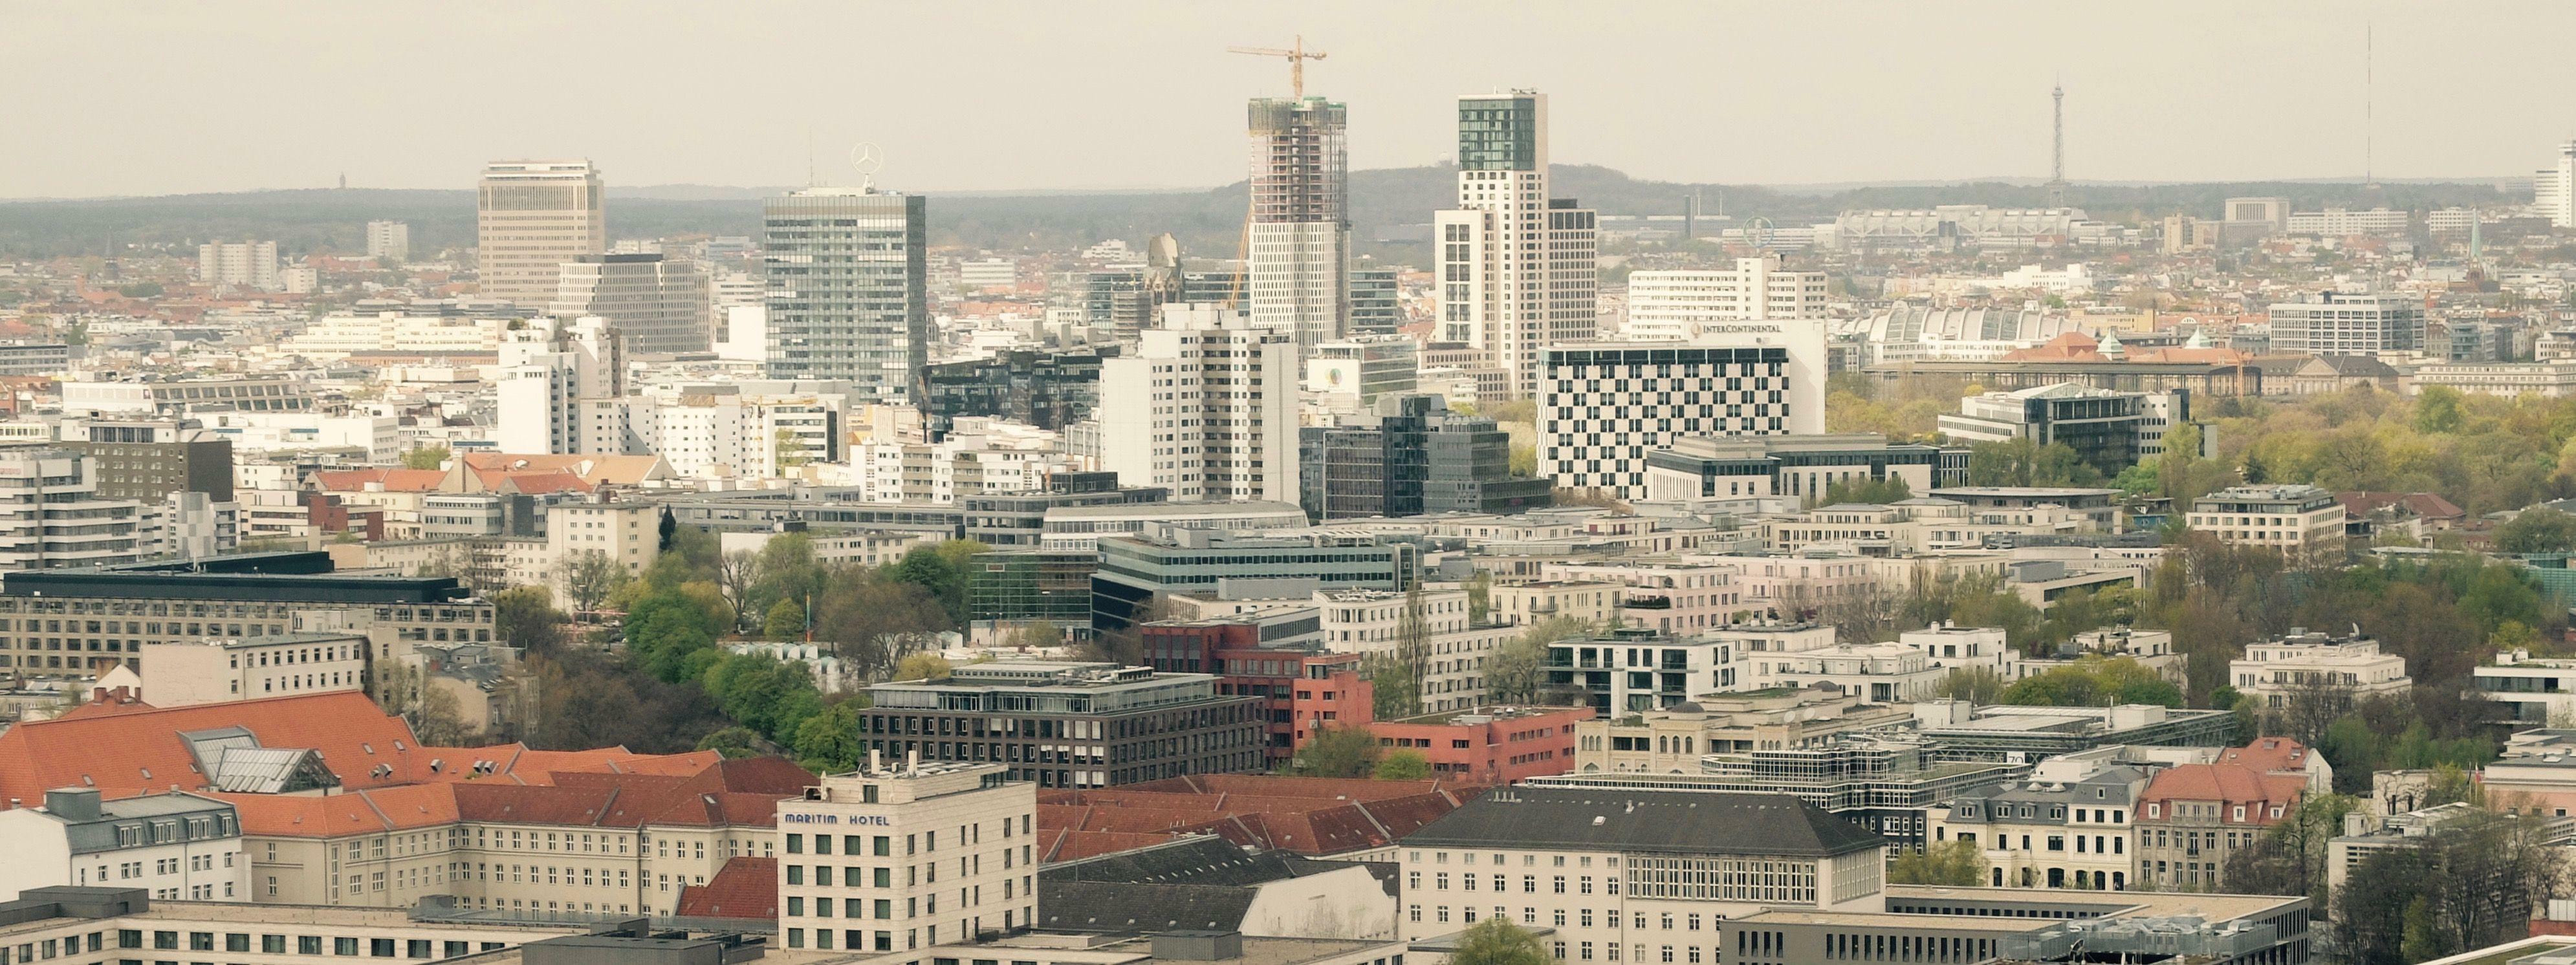 Wohnungen Berlin
 Wohnungen und Häuser in Berlin Experten warnen vor